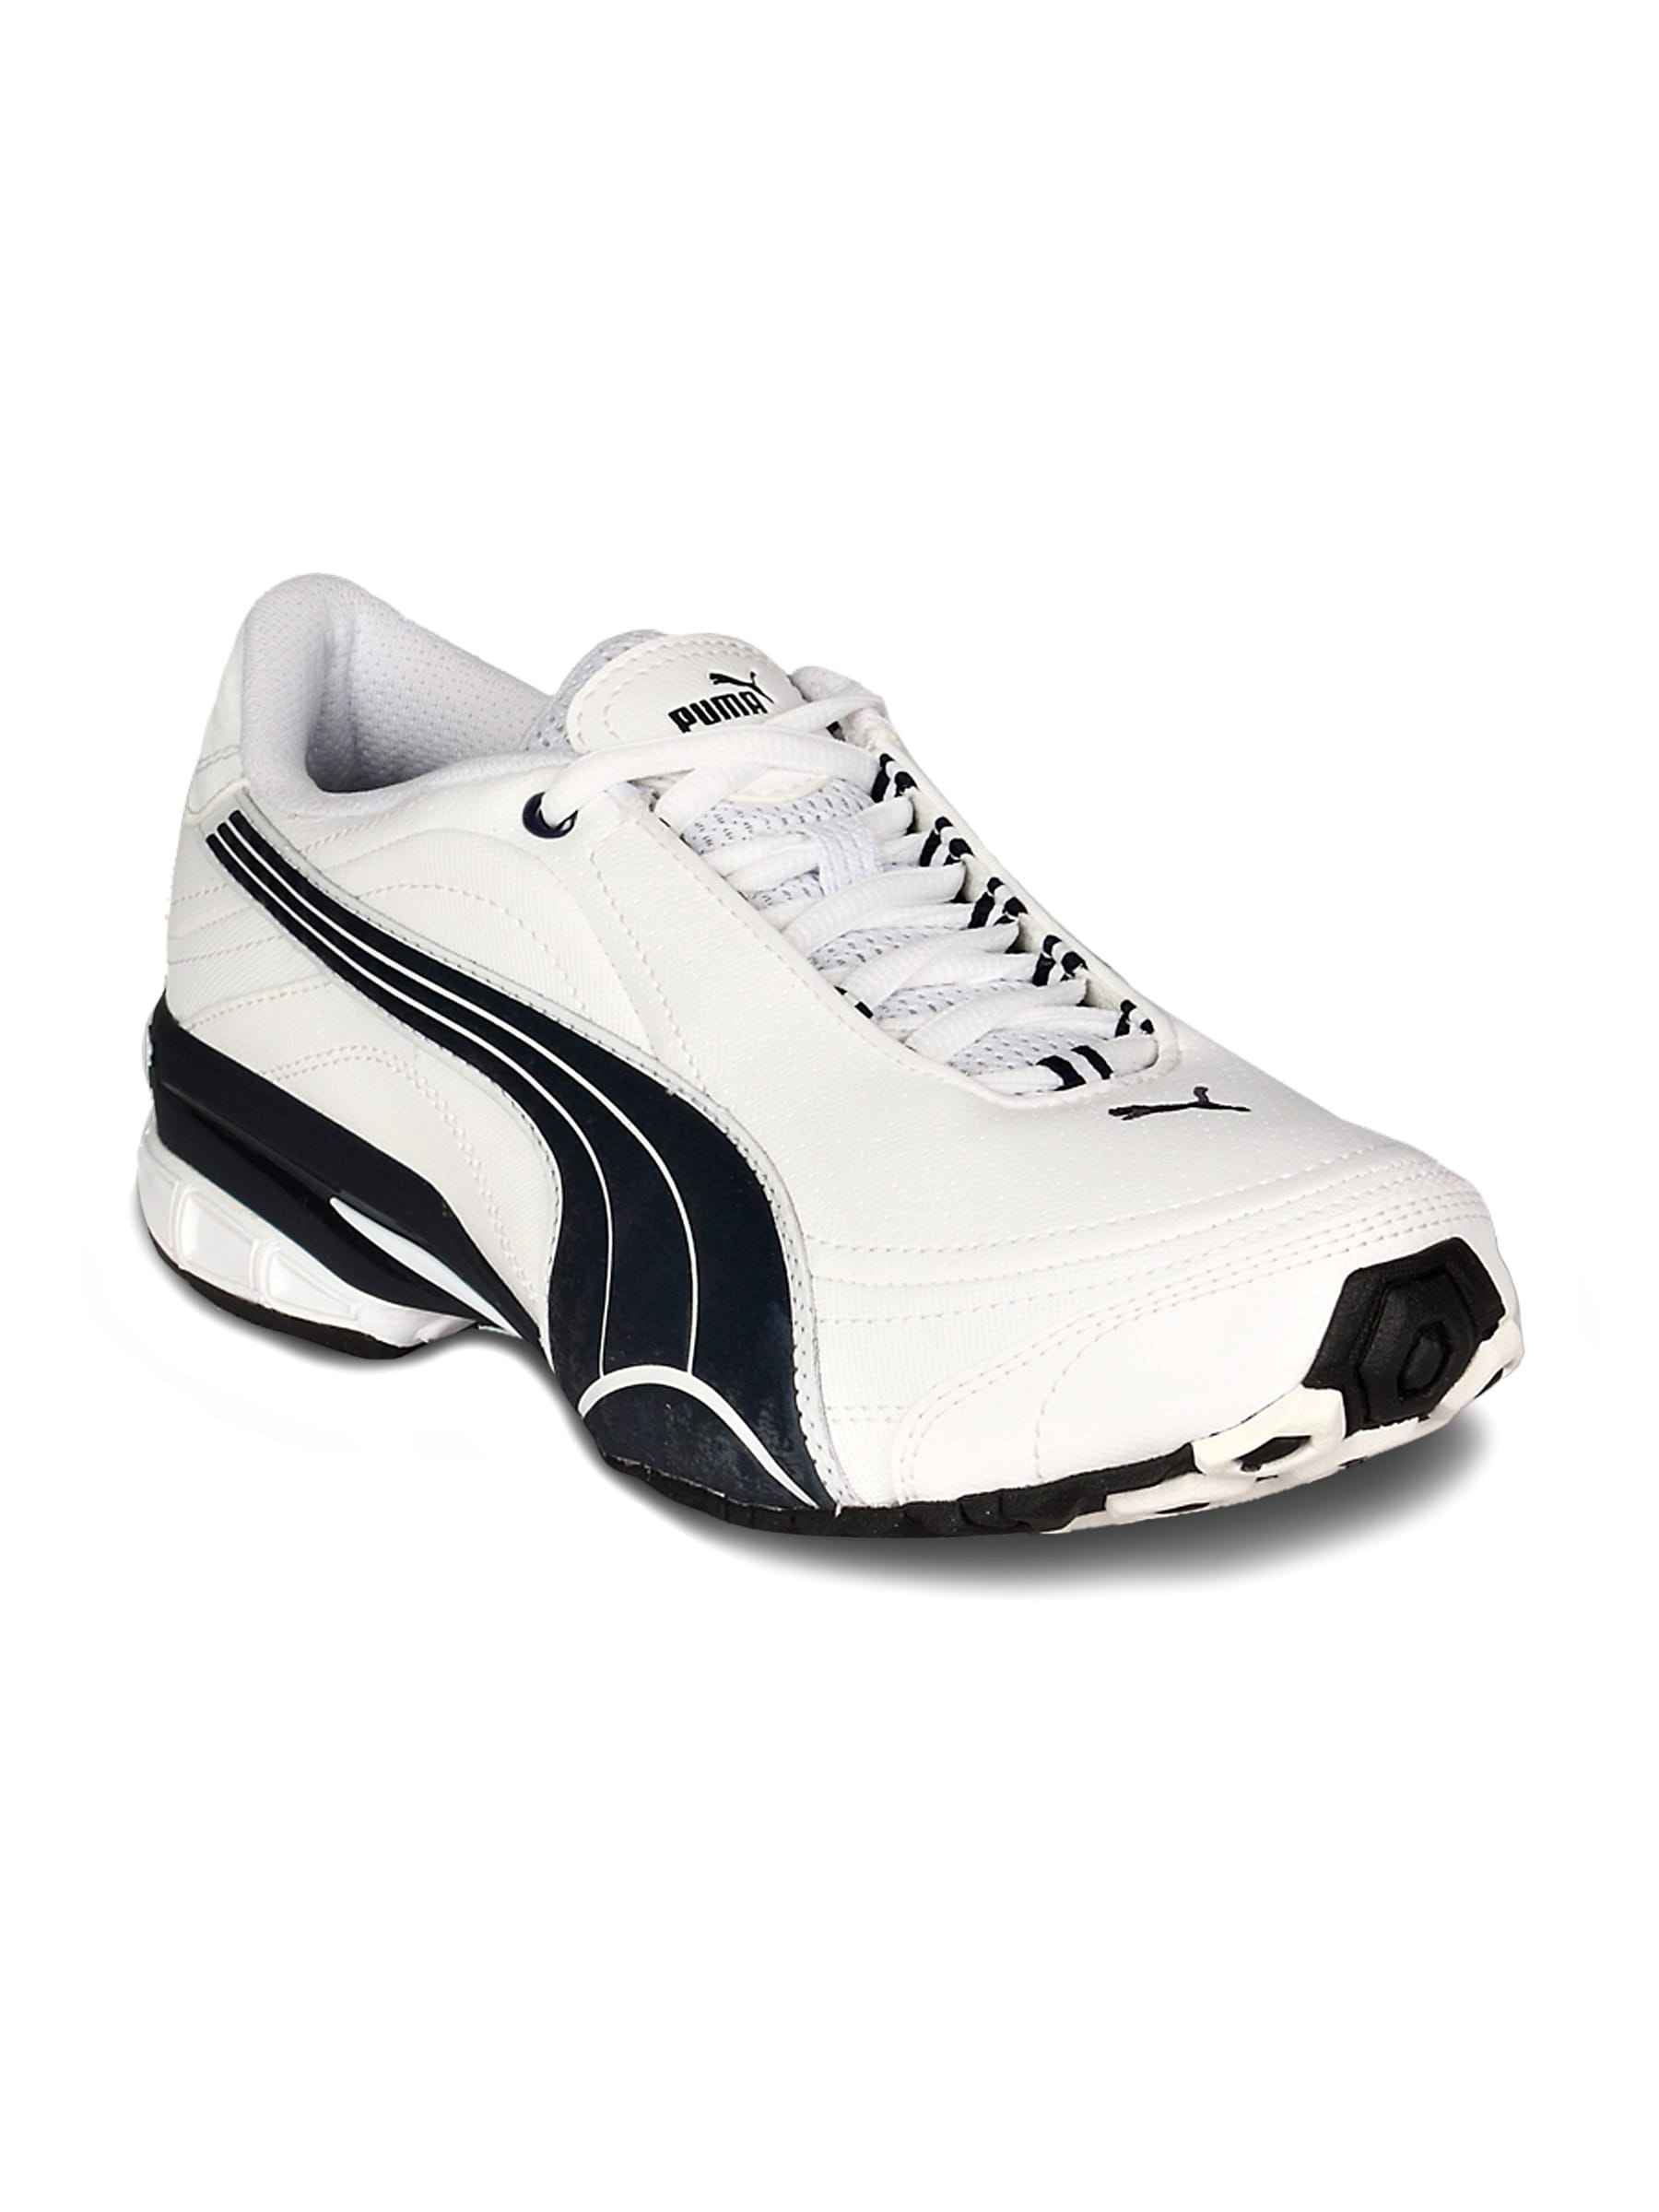 Puma Men's Tazon White Navy Silver Shoe